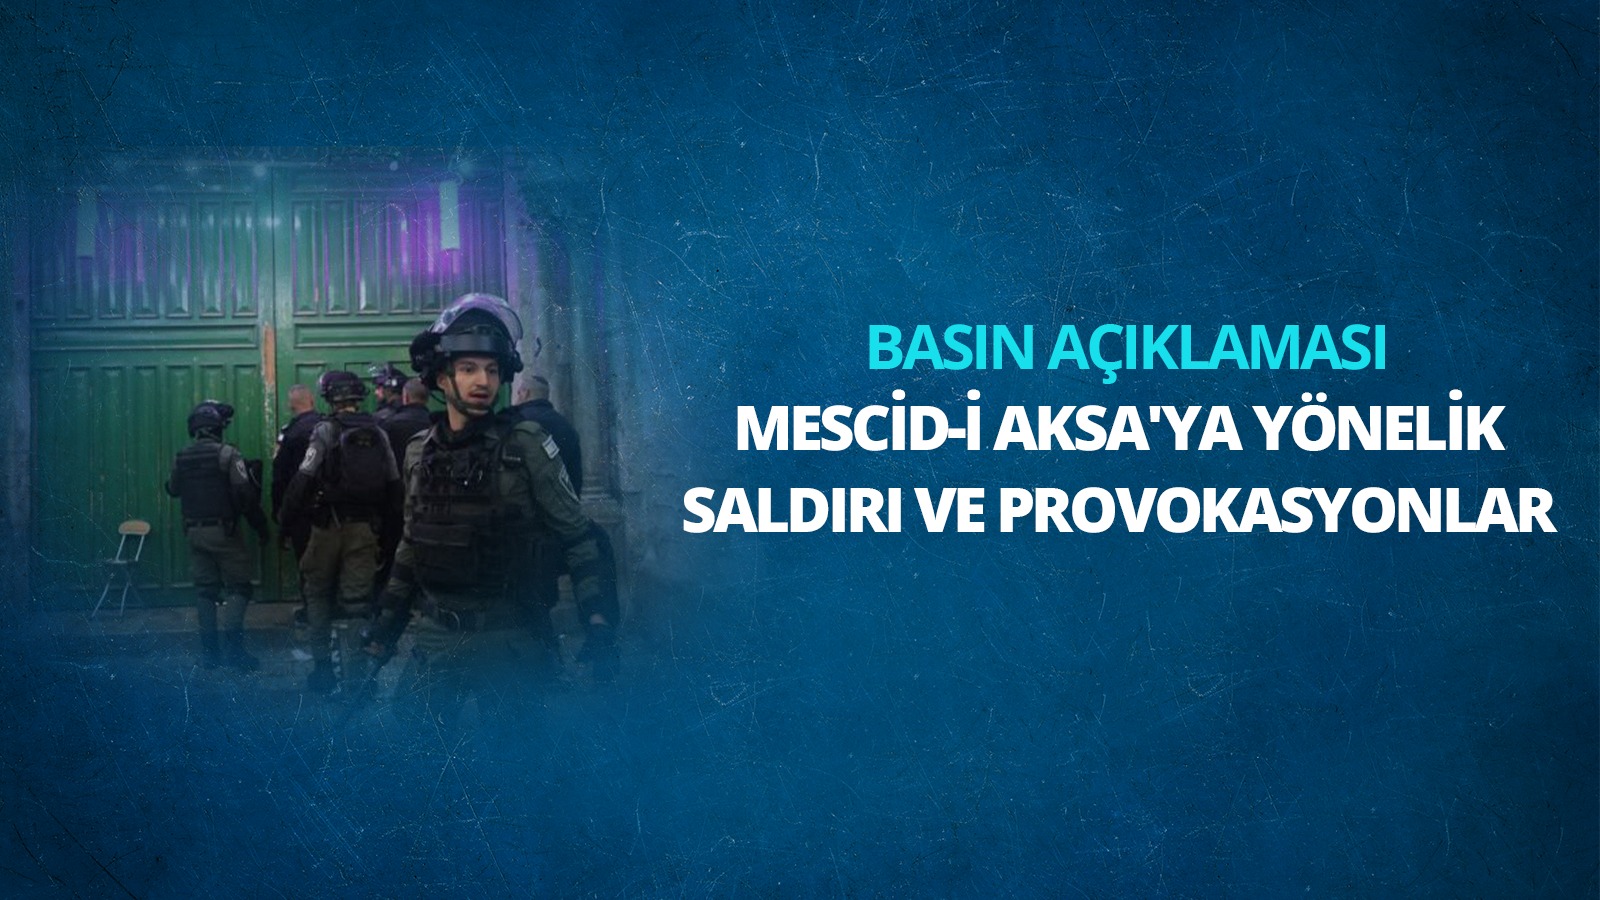 Mescid-i Aksa'ya Yönelik Saldırı ve Provokasyonlar Hakkında Basın Açıklaması